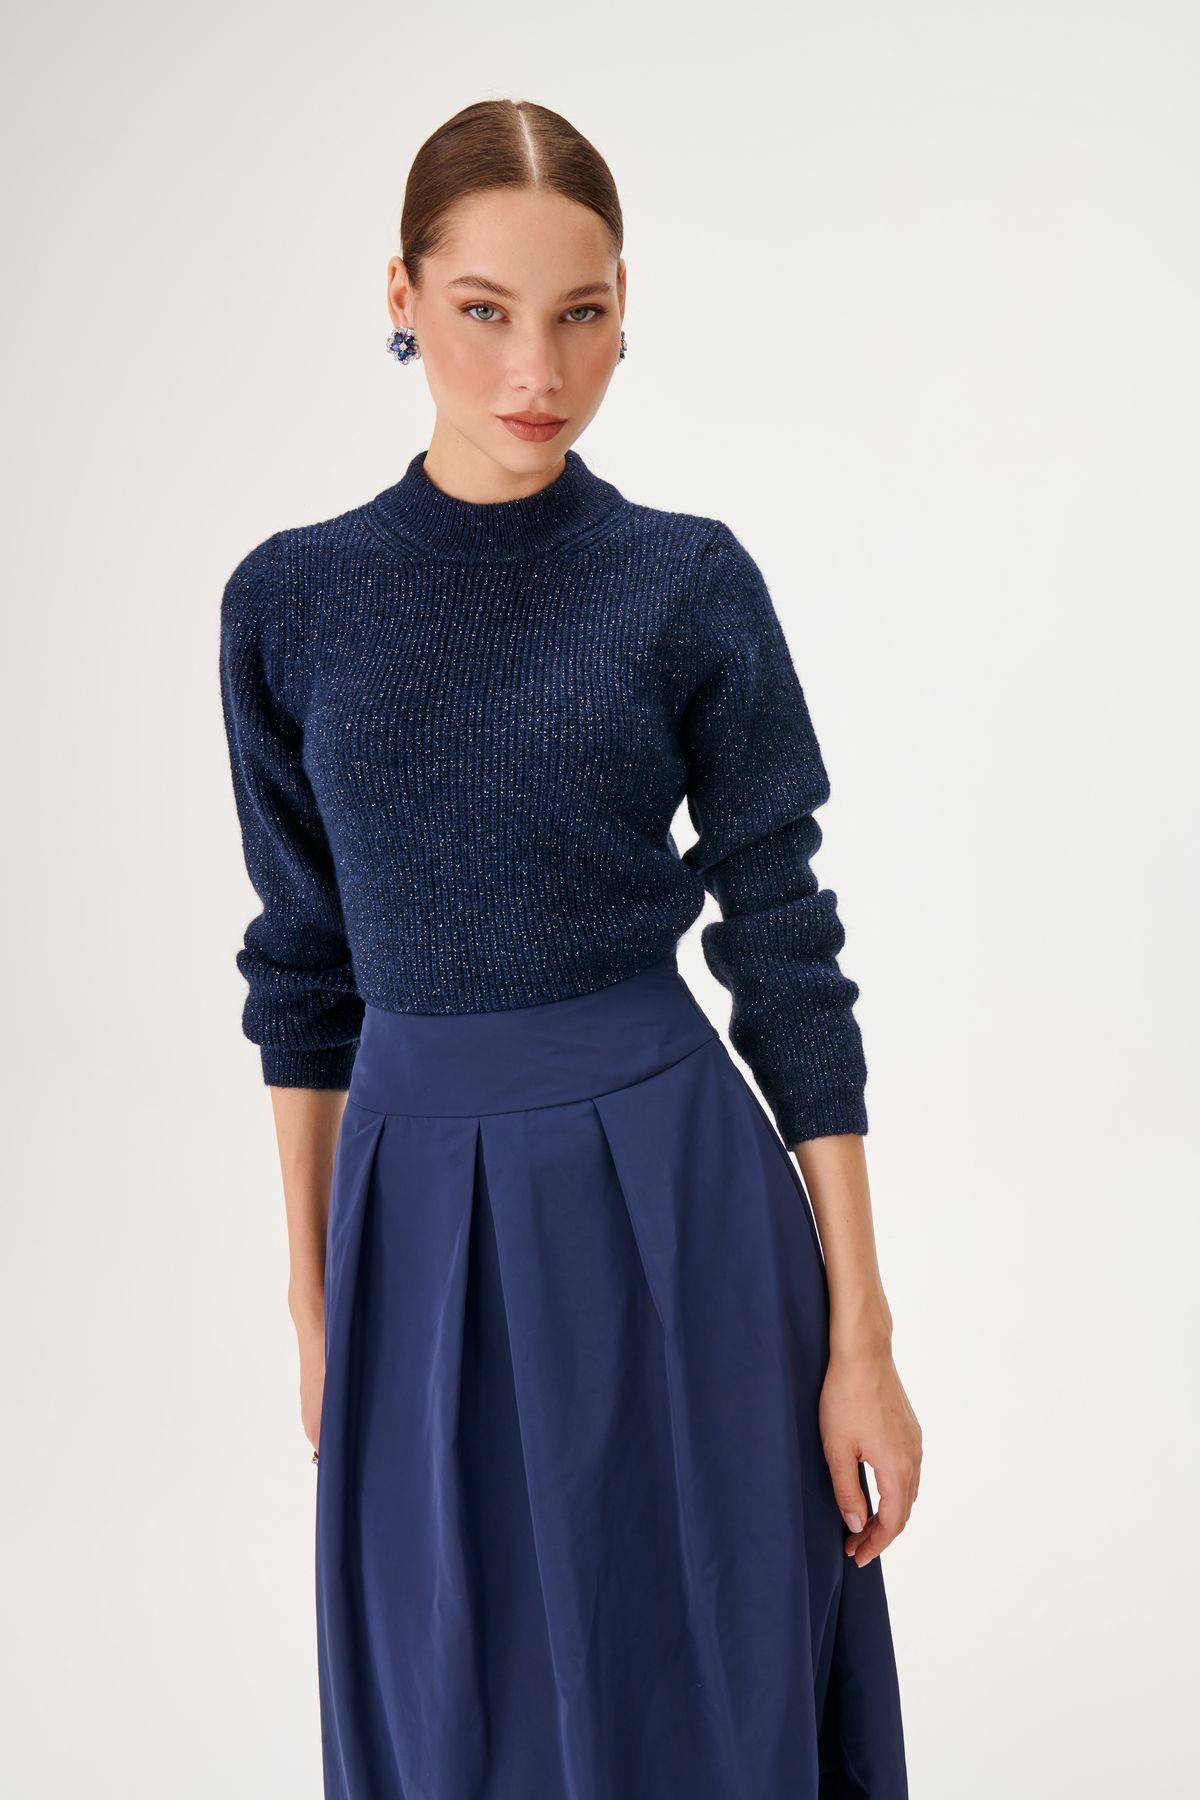 Wool Blend Navy Blue Knitwear Dress with Taffeta Fabric Skirt